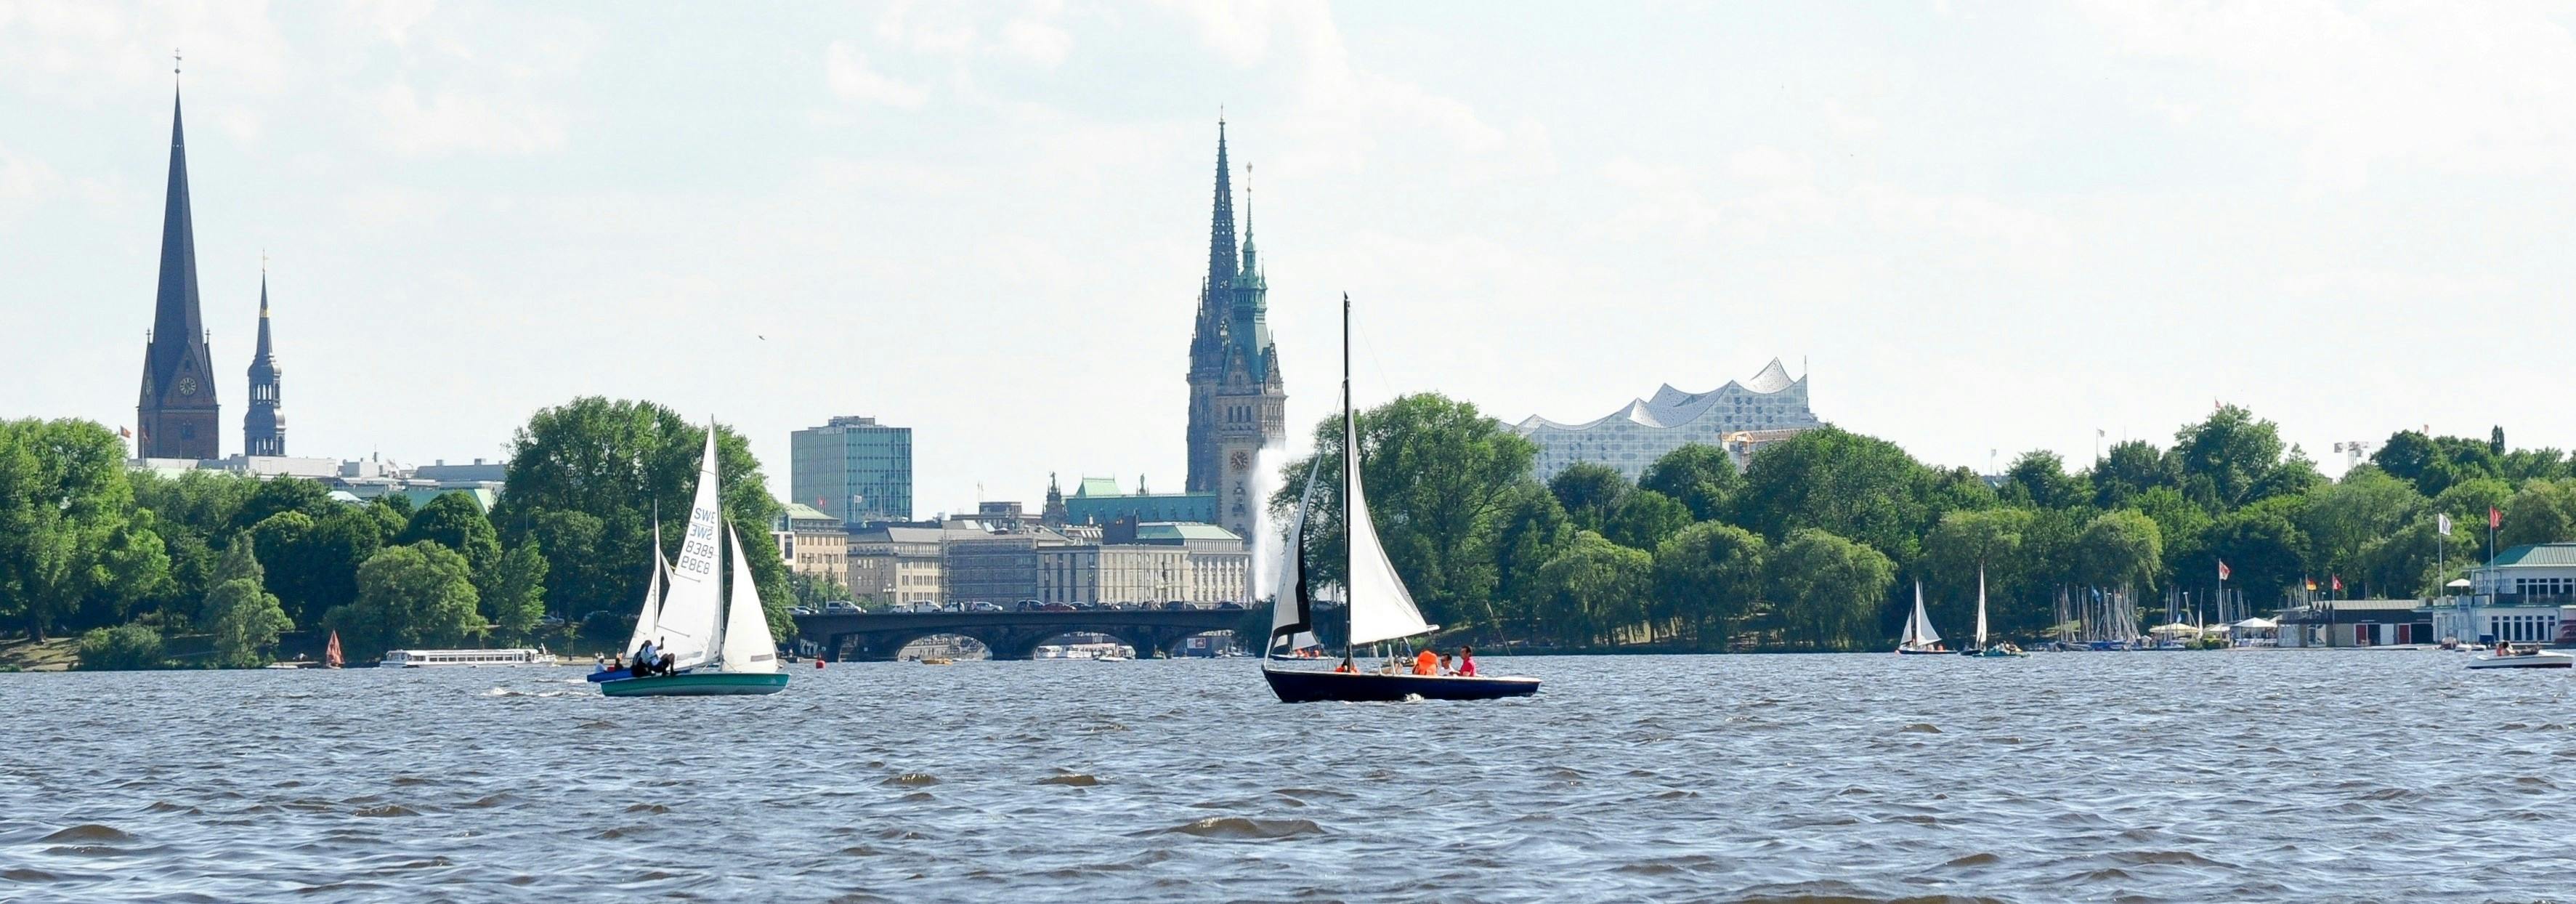 Viaje en velero con cúter de dos mástiles en el Alster de Hamburgo